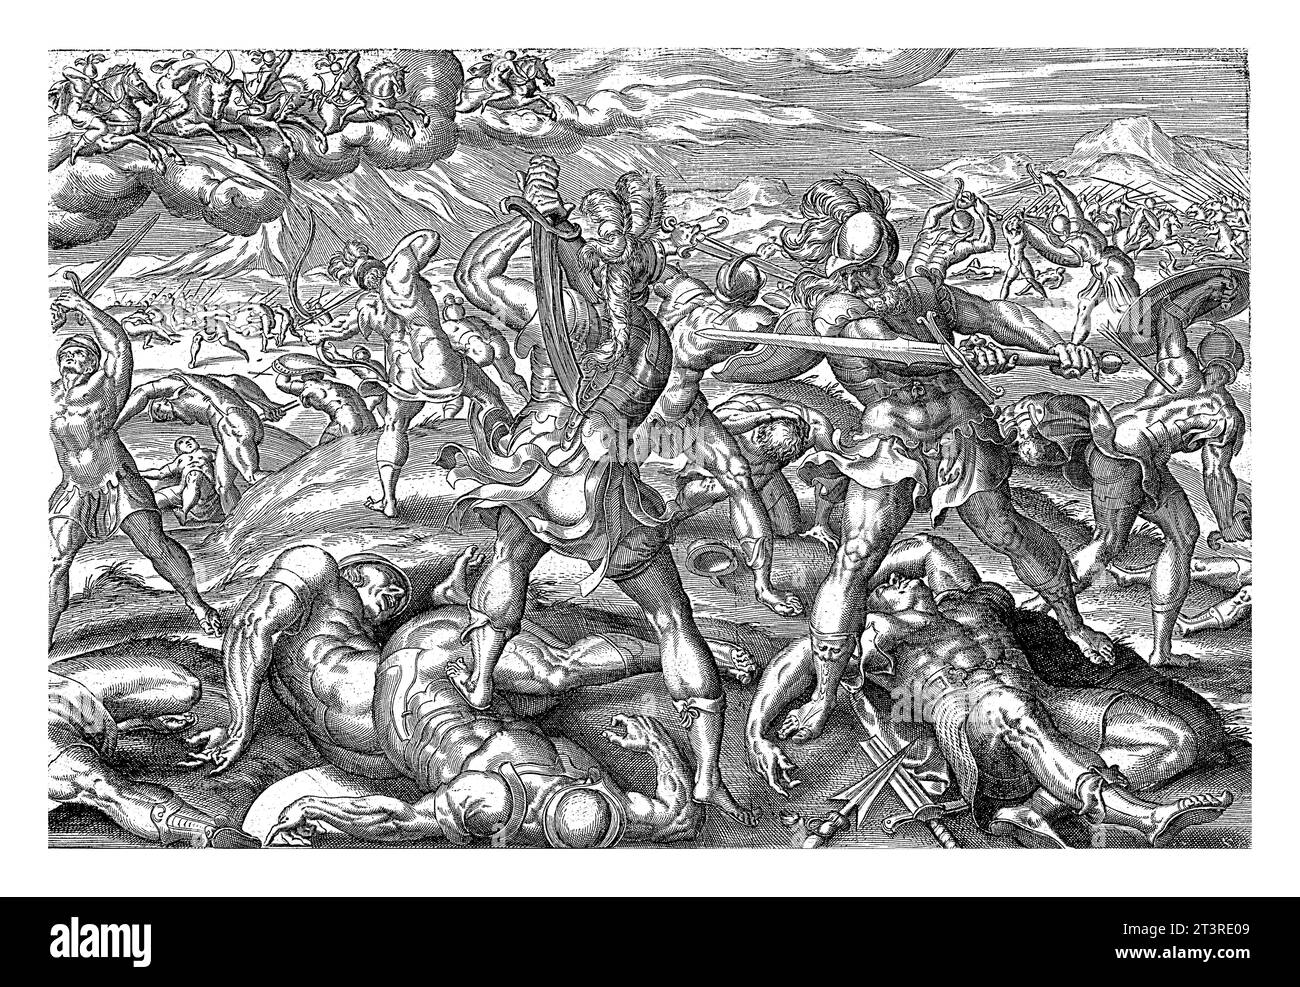 Timotheus Armee marschiert gegen Judäa und kämpft gegen die Juden. Am Himmel erscheinen fünf Reiter auf Pferden mit goldenen Zaum, die sich selbst stellen Stockfoto